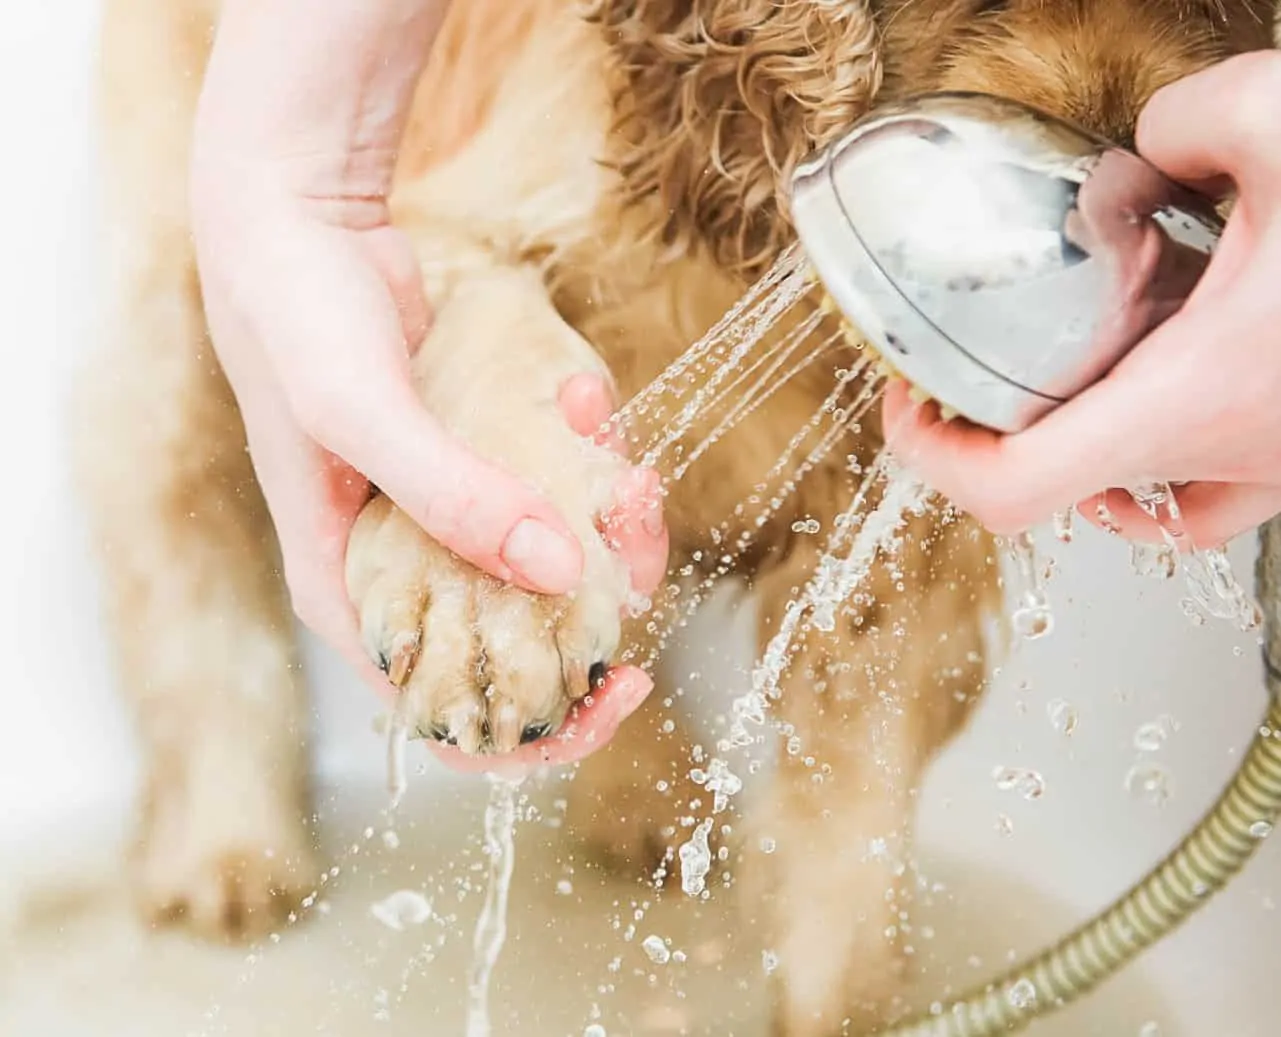  lavando a pata do cão